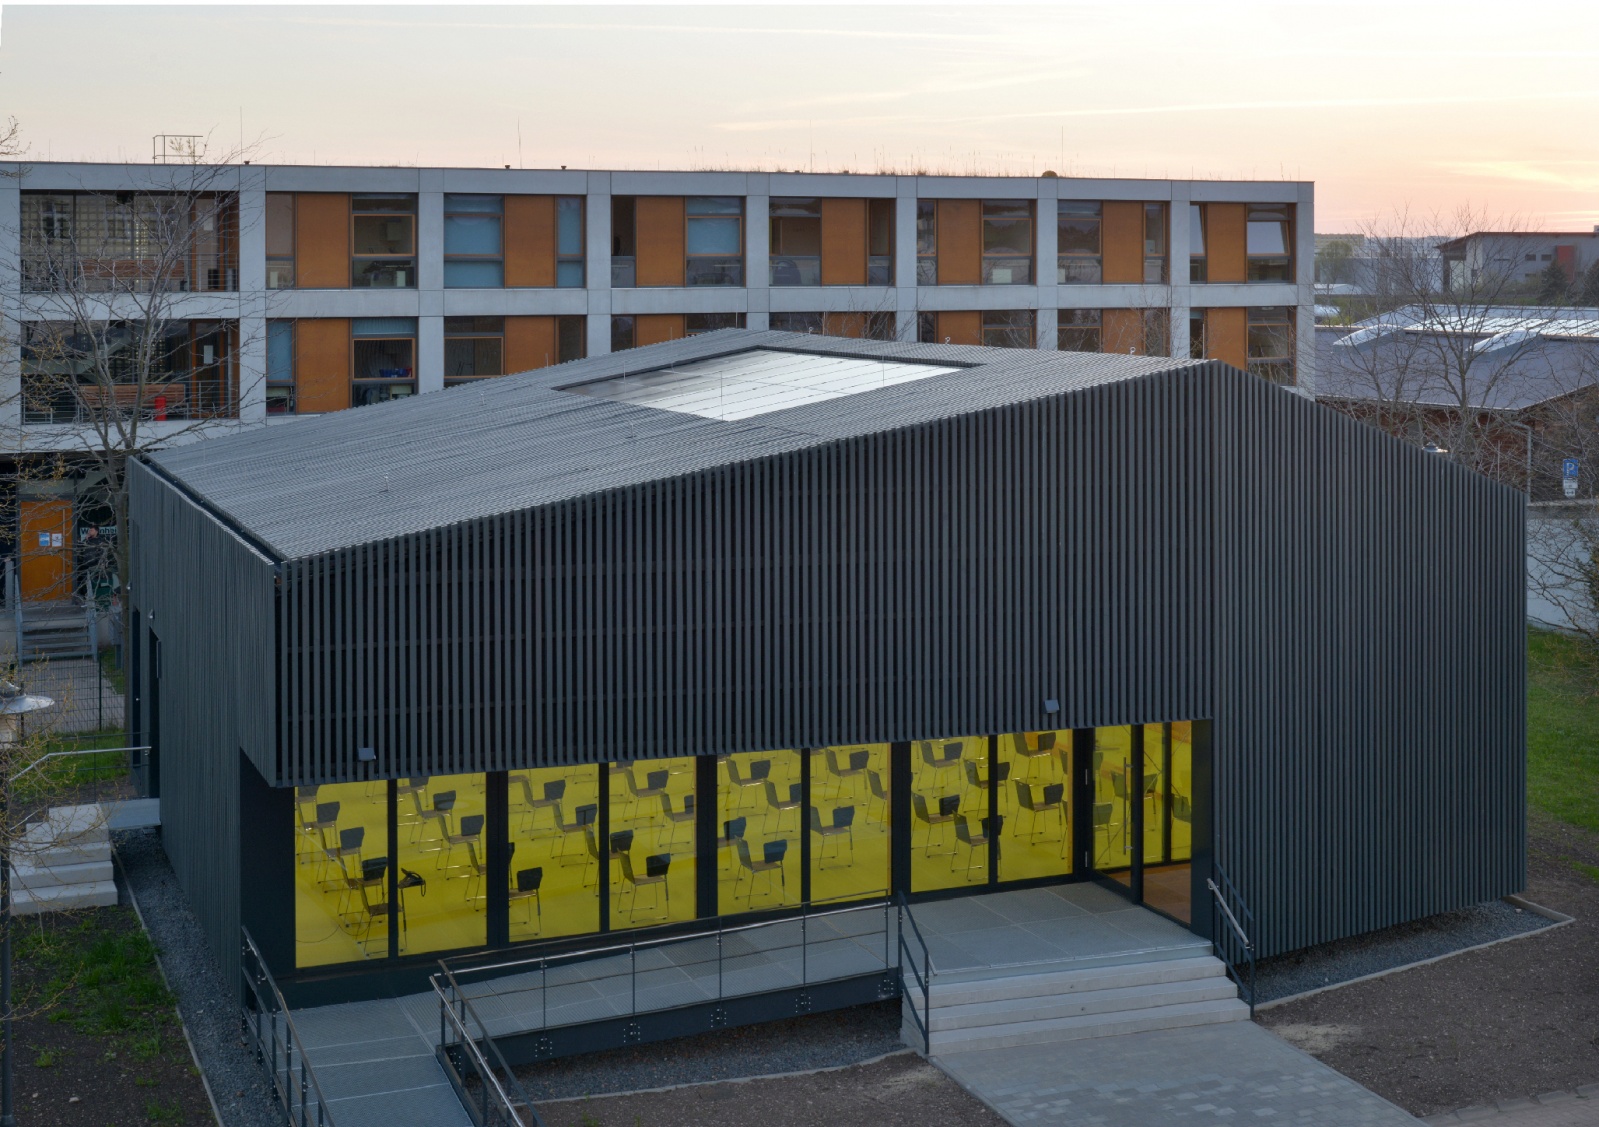 Green Campus. Ausgezeichnet mit dem Thüringer Staatspreis für Baukultur 2020/2021, Bild: Jörg Behrens